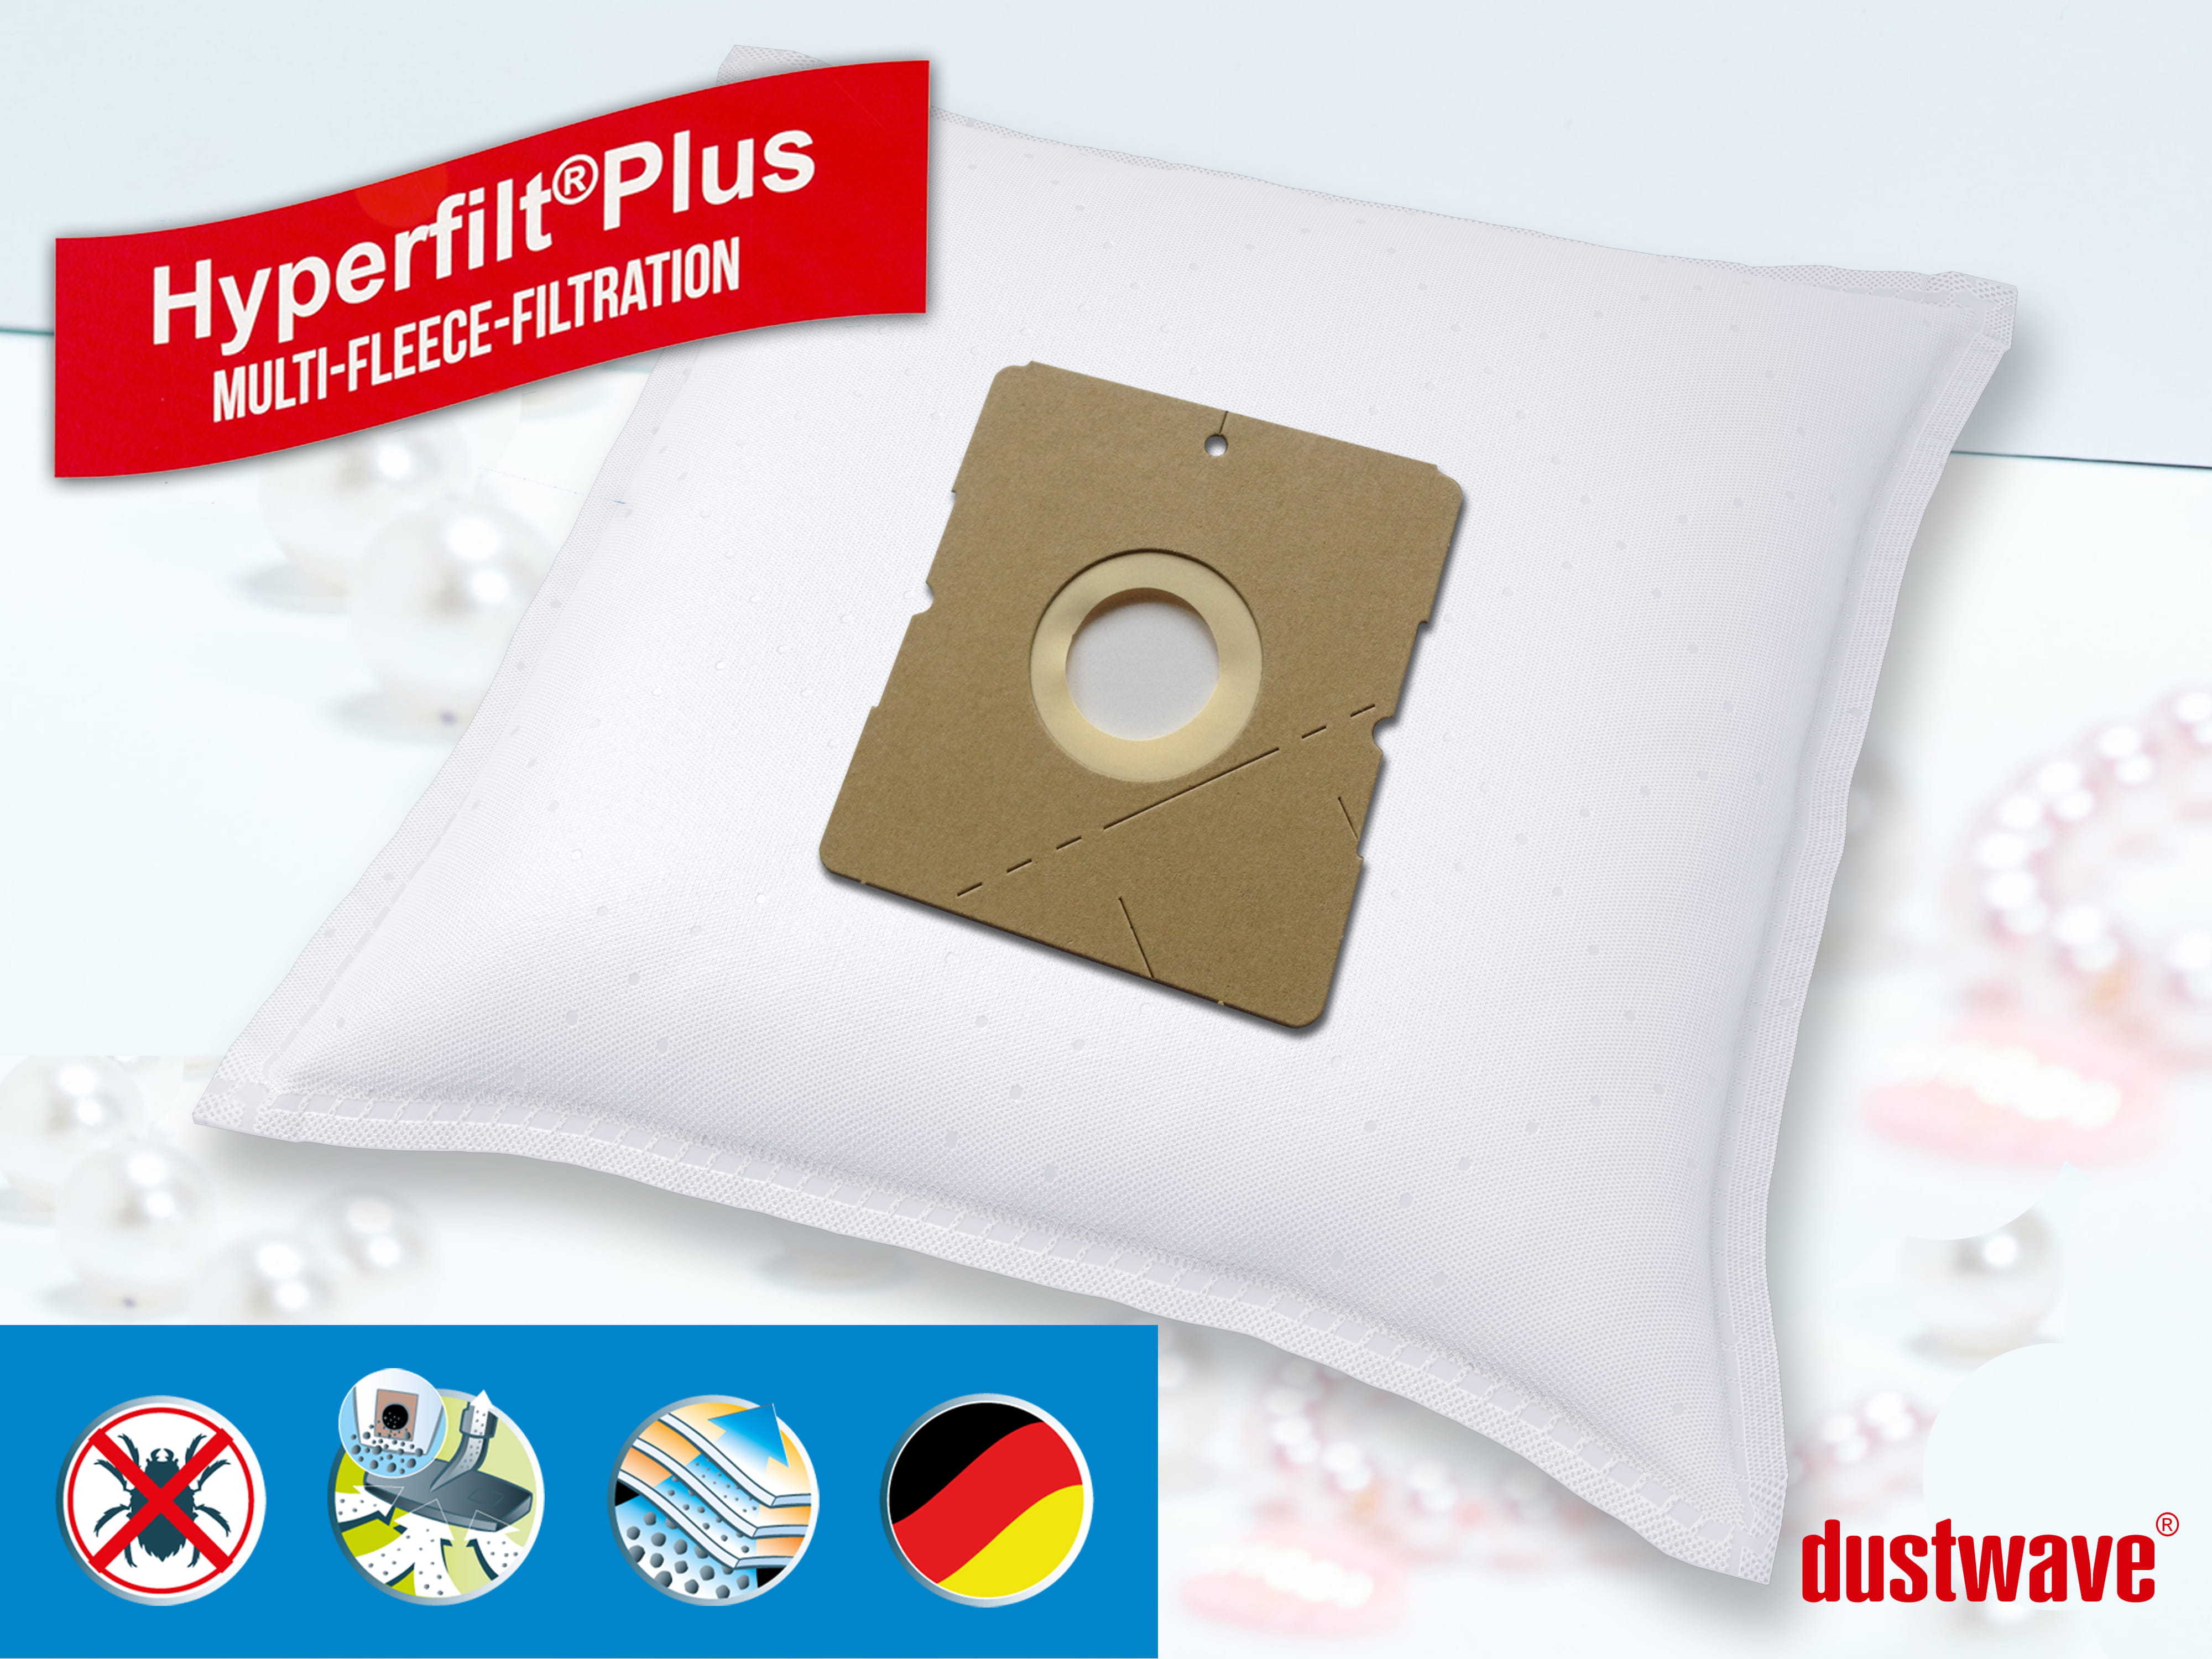 Dustwave® 10 Staubsaugerbeutel für Hoover SX9740 001 - hocheffizient, mehrlagiges Mikrovlies mit Hygieneverschluss - Made in Germany